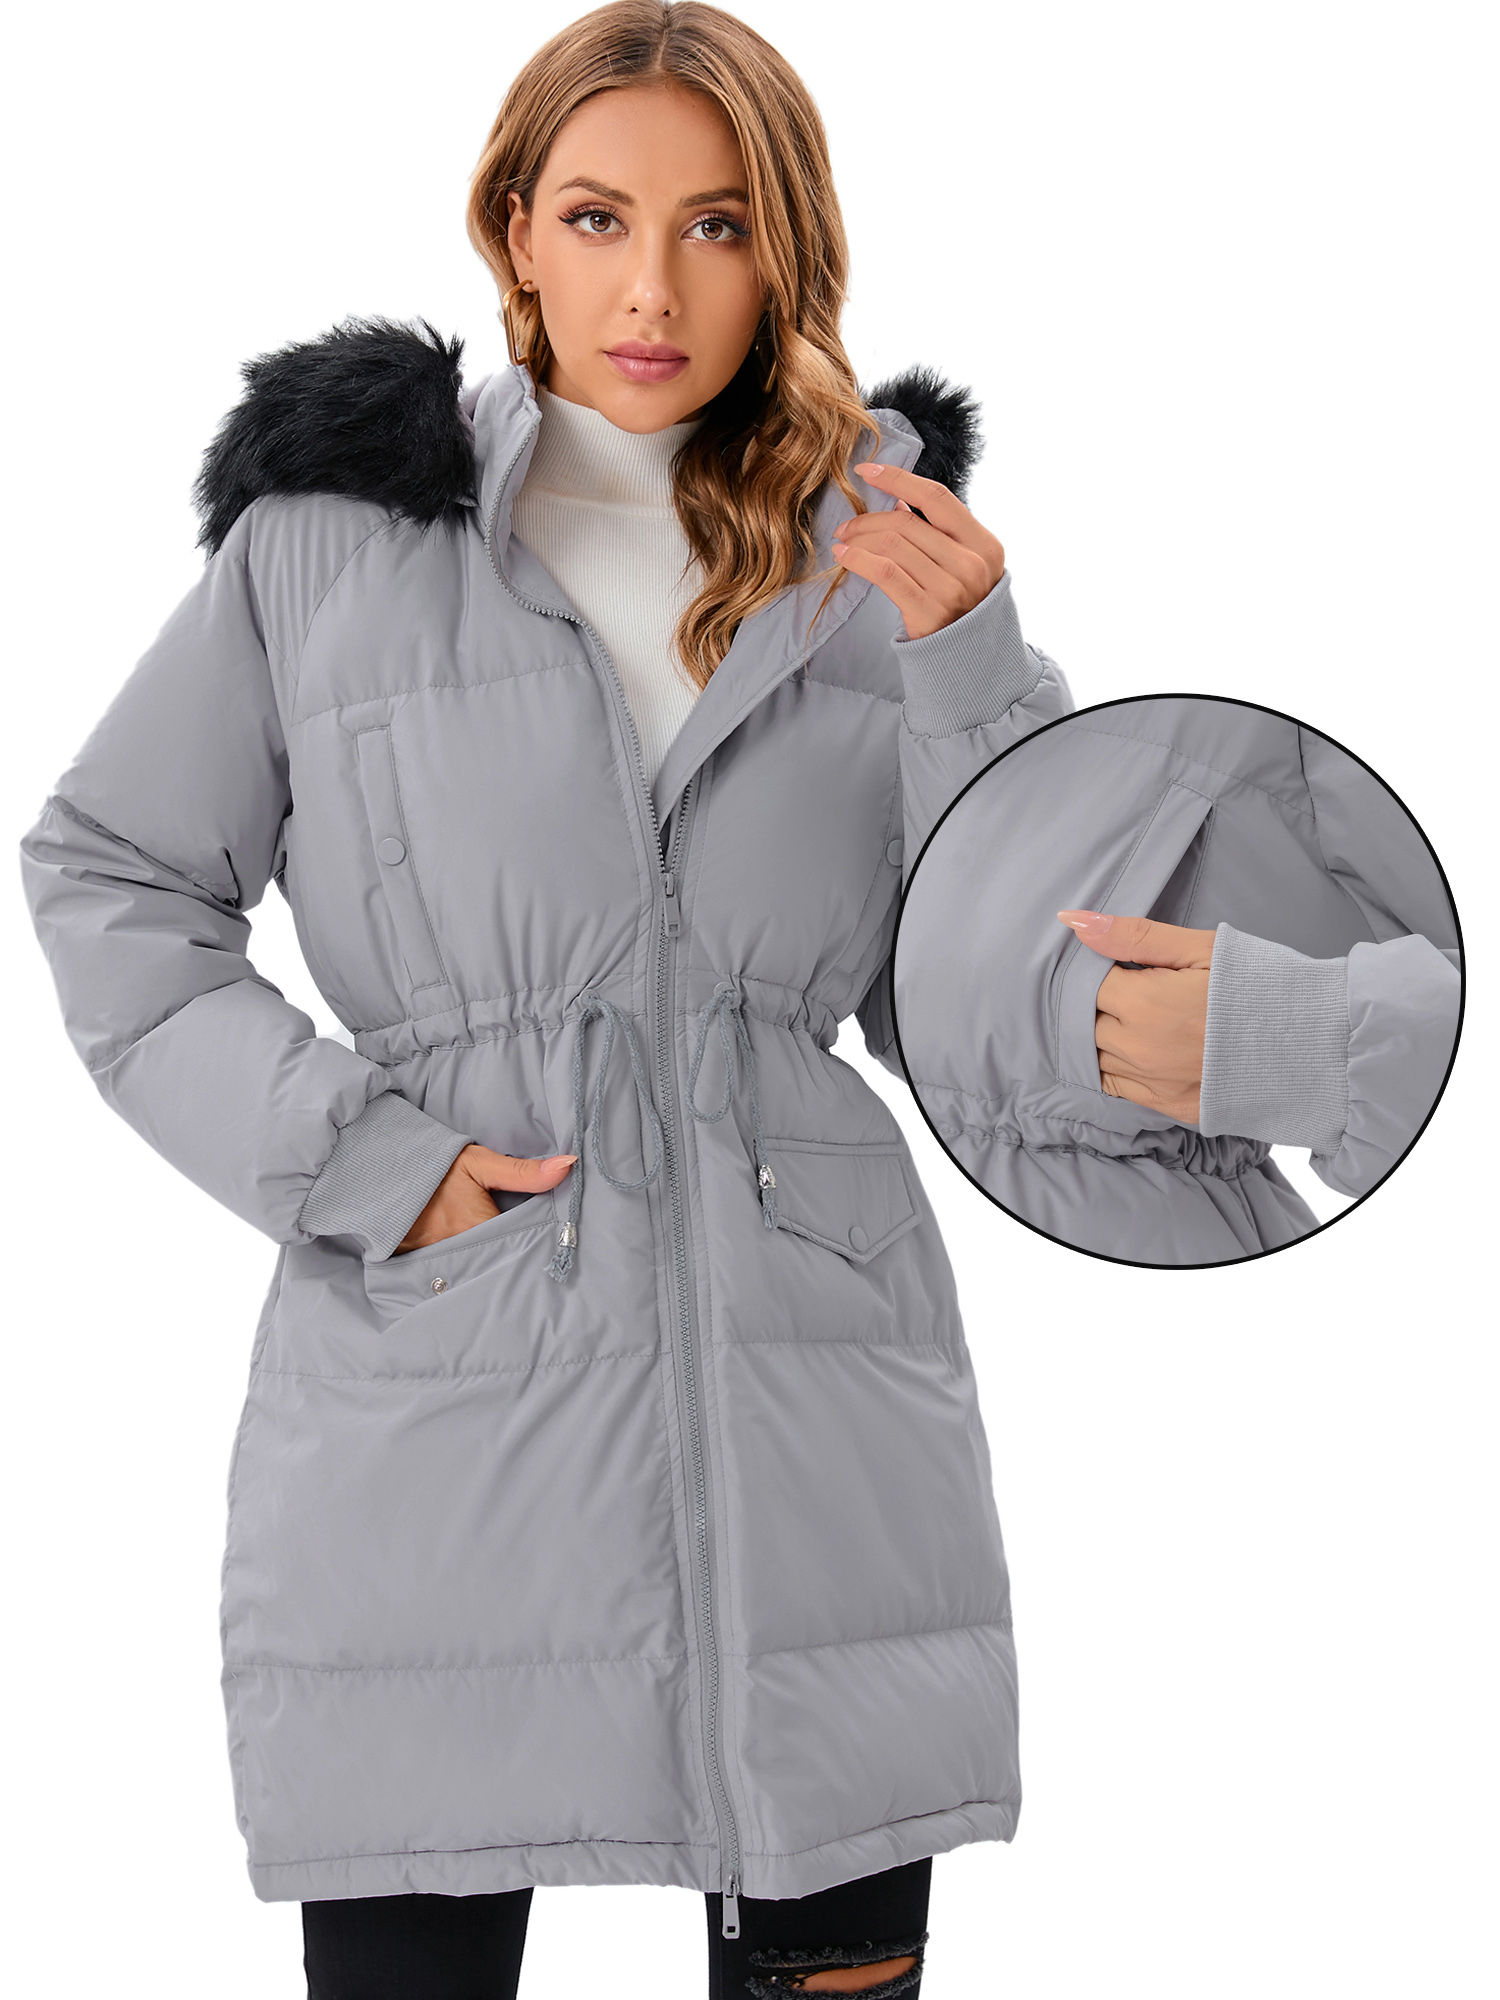 LELINTA Women's Winter Long Down Jacket Thickened Outwear Warm Puffer Fur Trim Hooded Coat Waterproof Rain Zip Parka, Black/ Camouflage - image 1 of 7